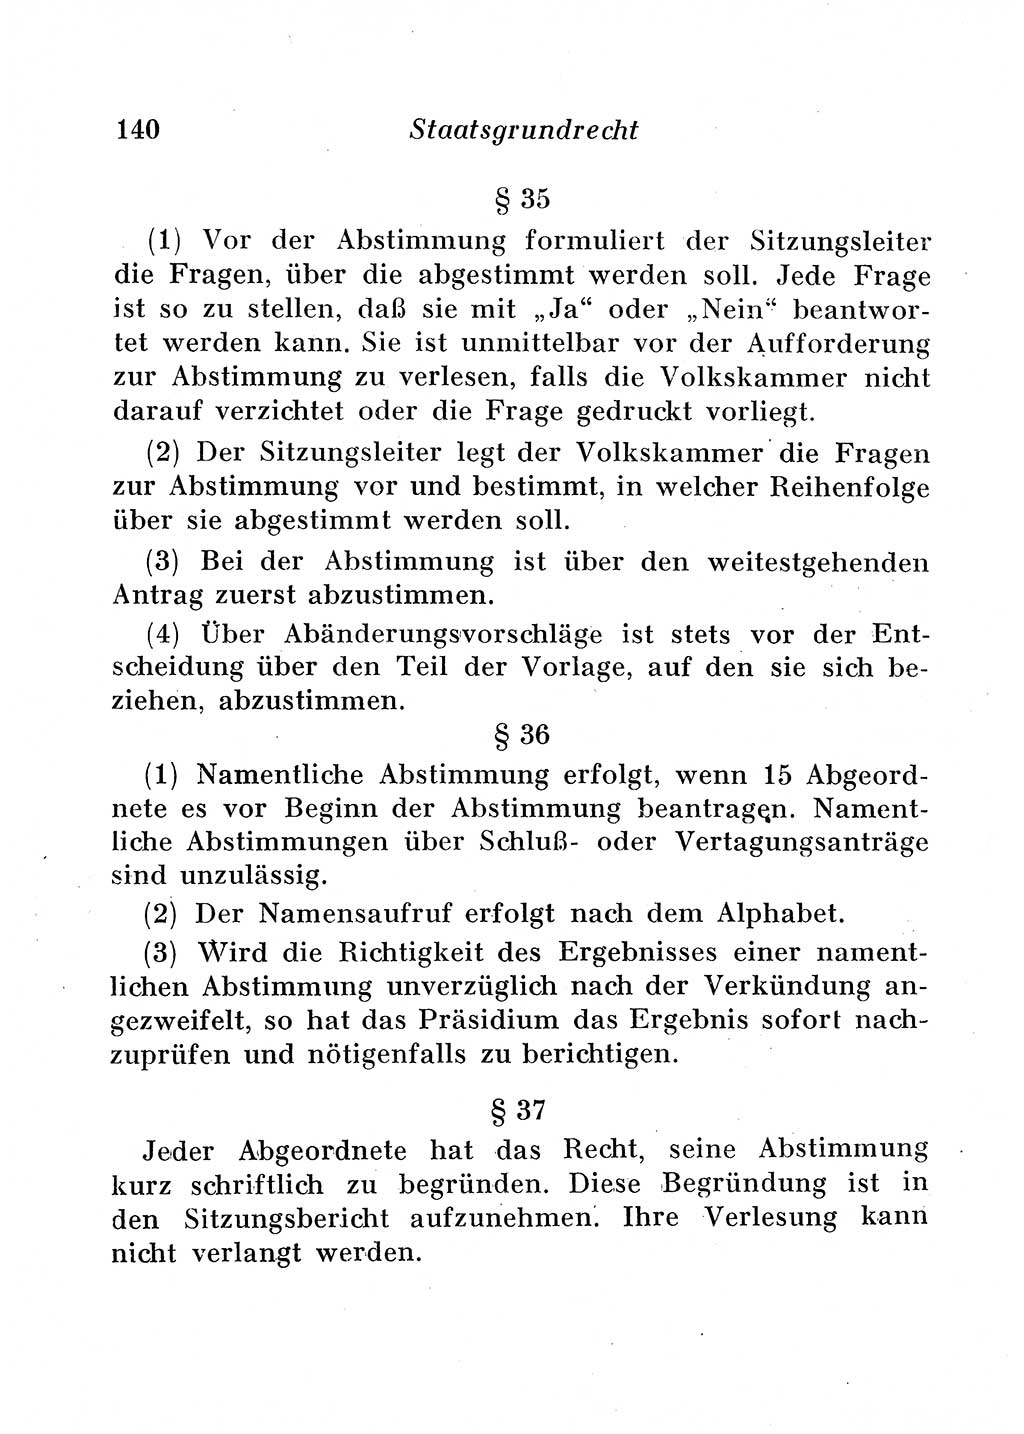 Staats- und verwaltungsrechtliche Gesetze der Deutschen Demokratischen Republik (DDR) 1958, Seite 140 (StVerwR Ges. DDR 1958, S. 140)